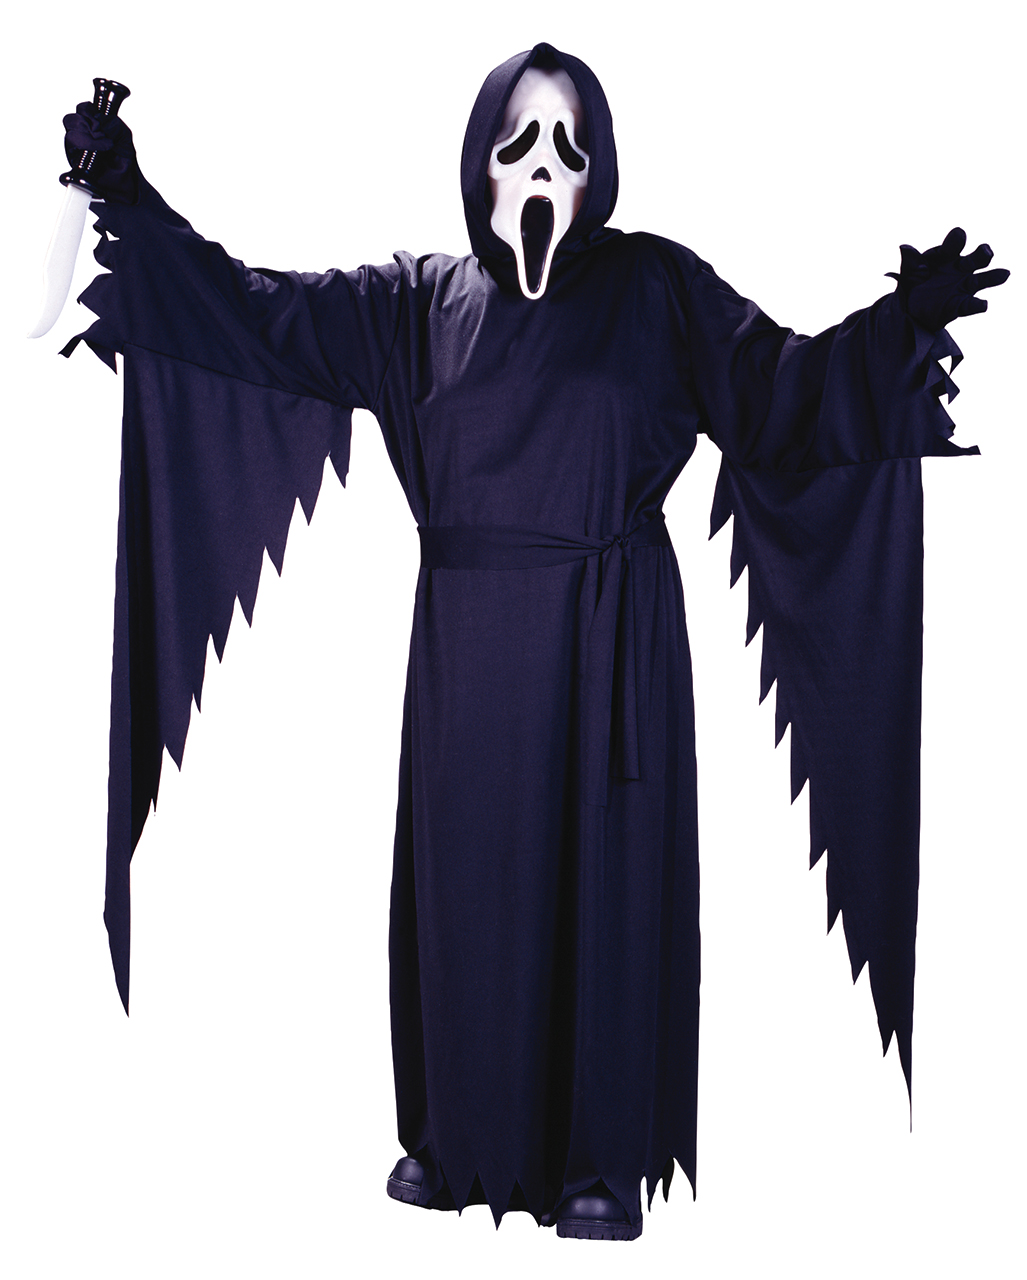 ★ Scream Geister Geist kostüm Halloween Horror Kostüm mit Maske One Size 